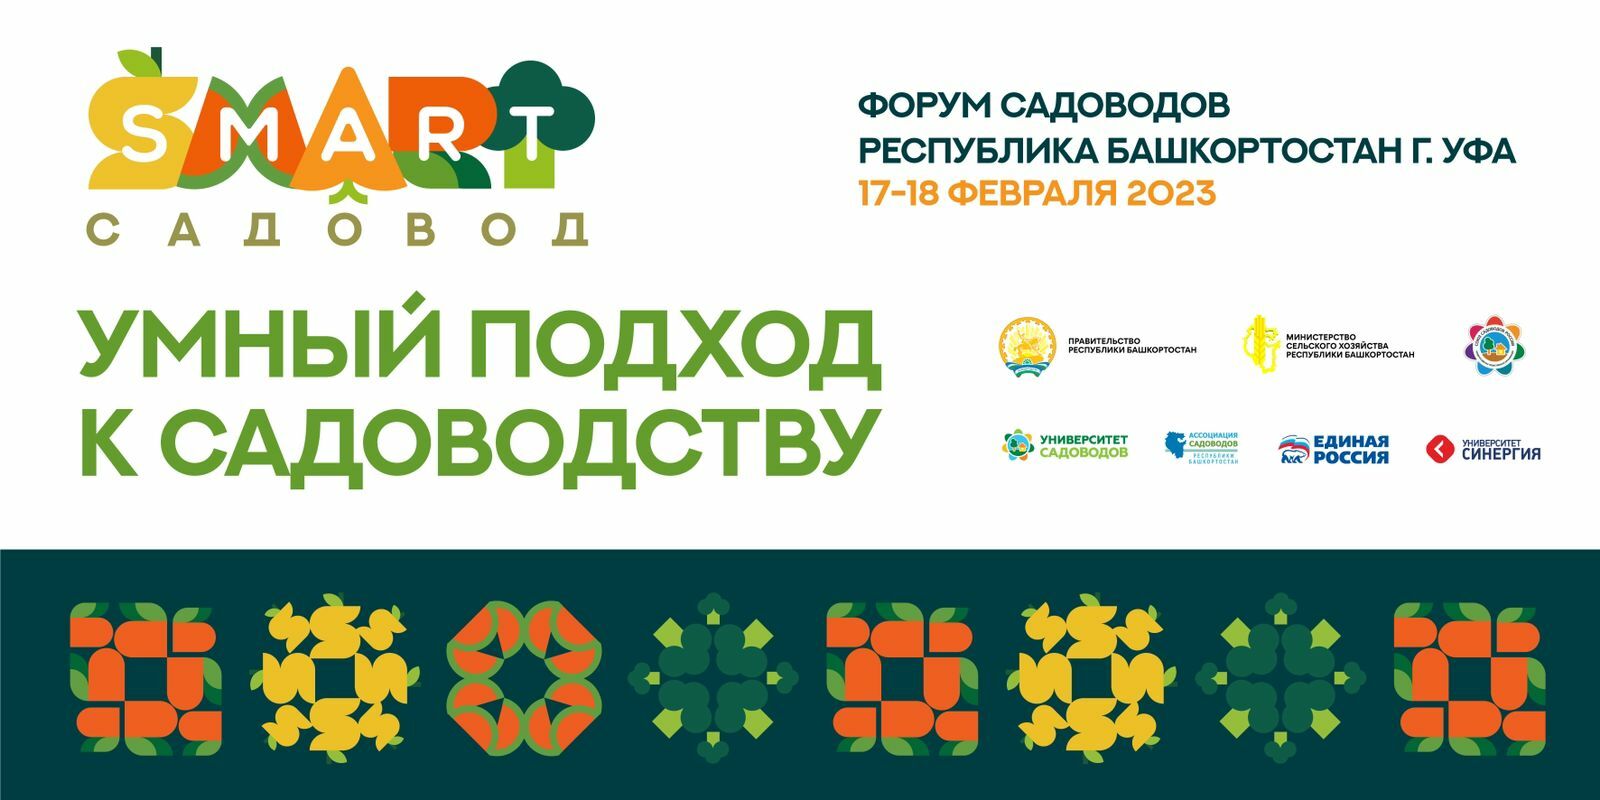 О возможностях СНТ в бизнесе рассказали на форуме садоводов в Башкортостане